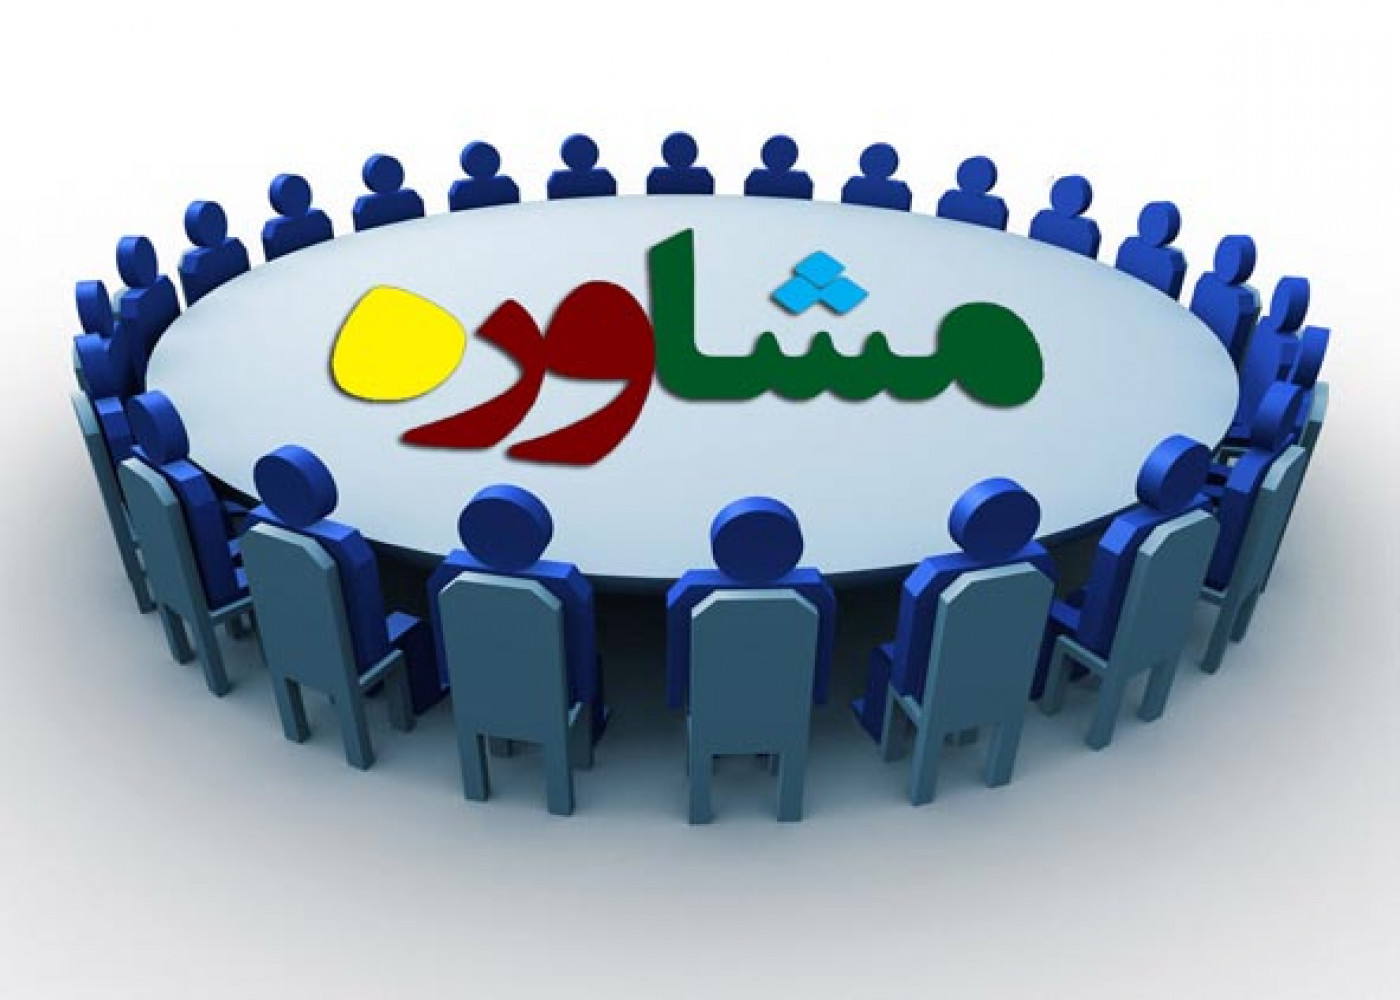 ارائه بیش از 5150 نفر ساعت مشاوره عمومی و تخصصی کسب و کار به متقاضیان - سازمان جهاددانشگاهی استان کرمانشاه